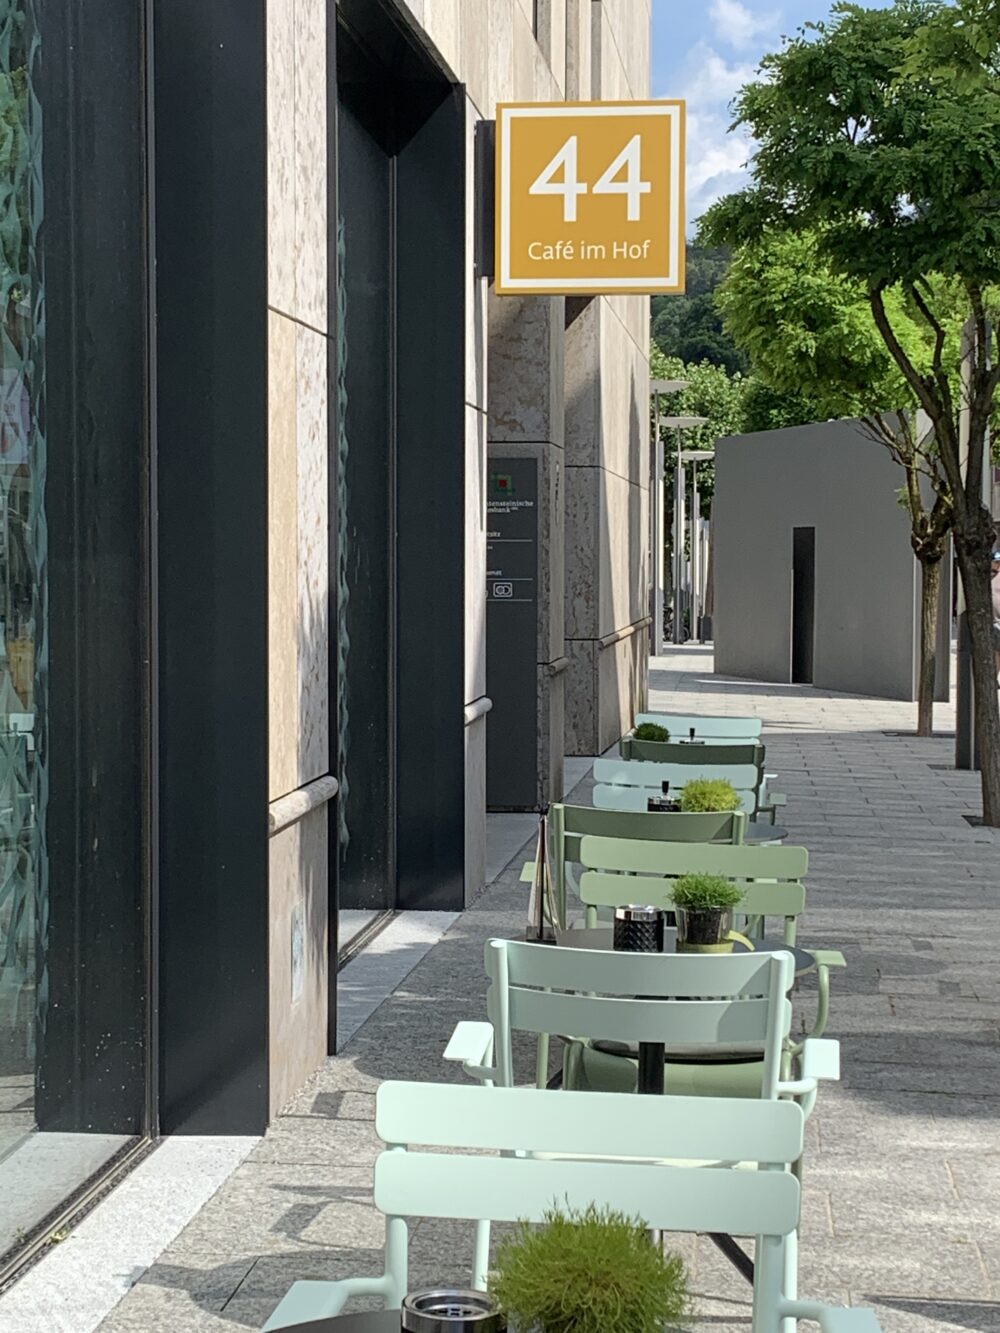 Umgestaltung Café „44“, Liechtensteinische Landesbank, Vaduz Mai 2022